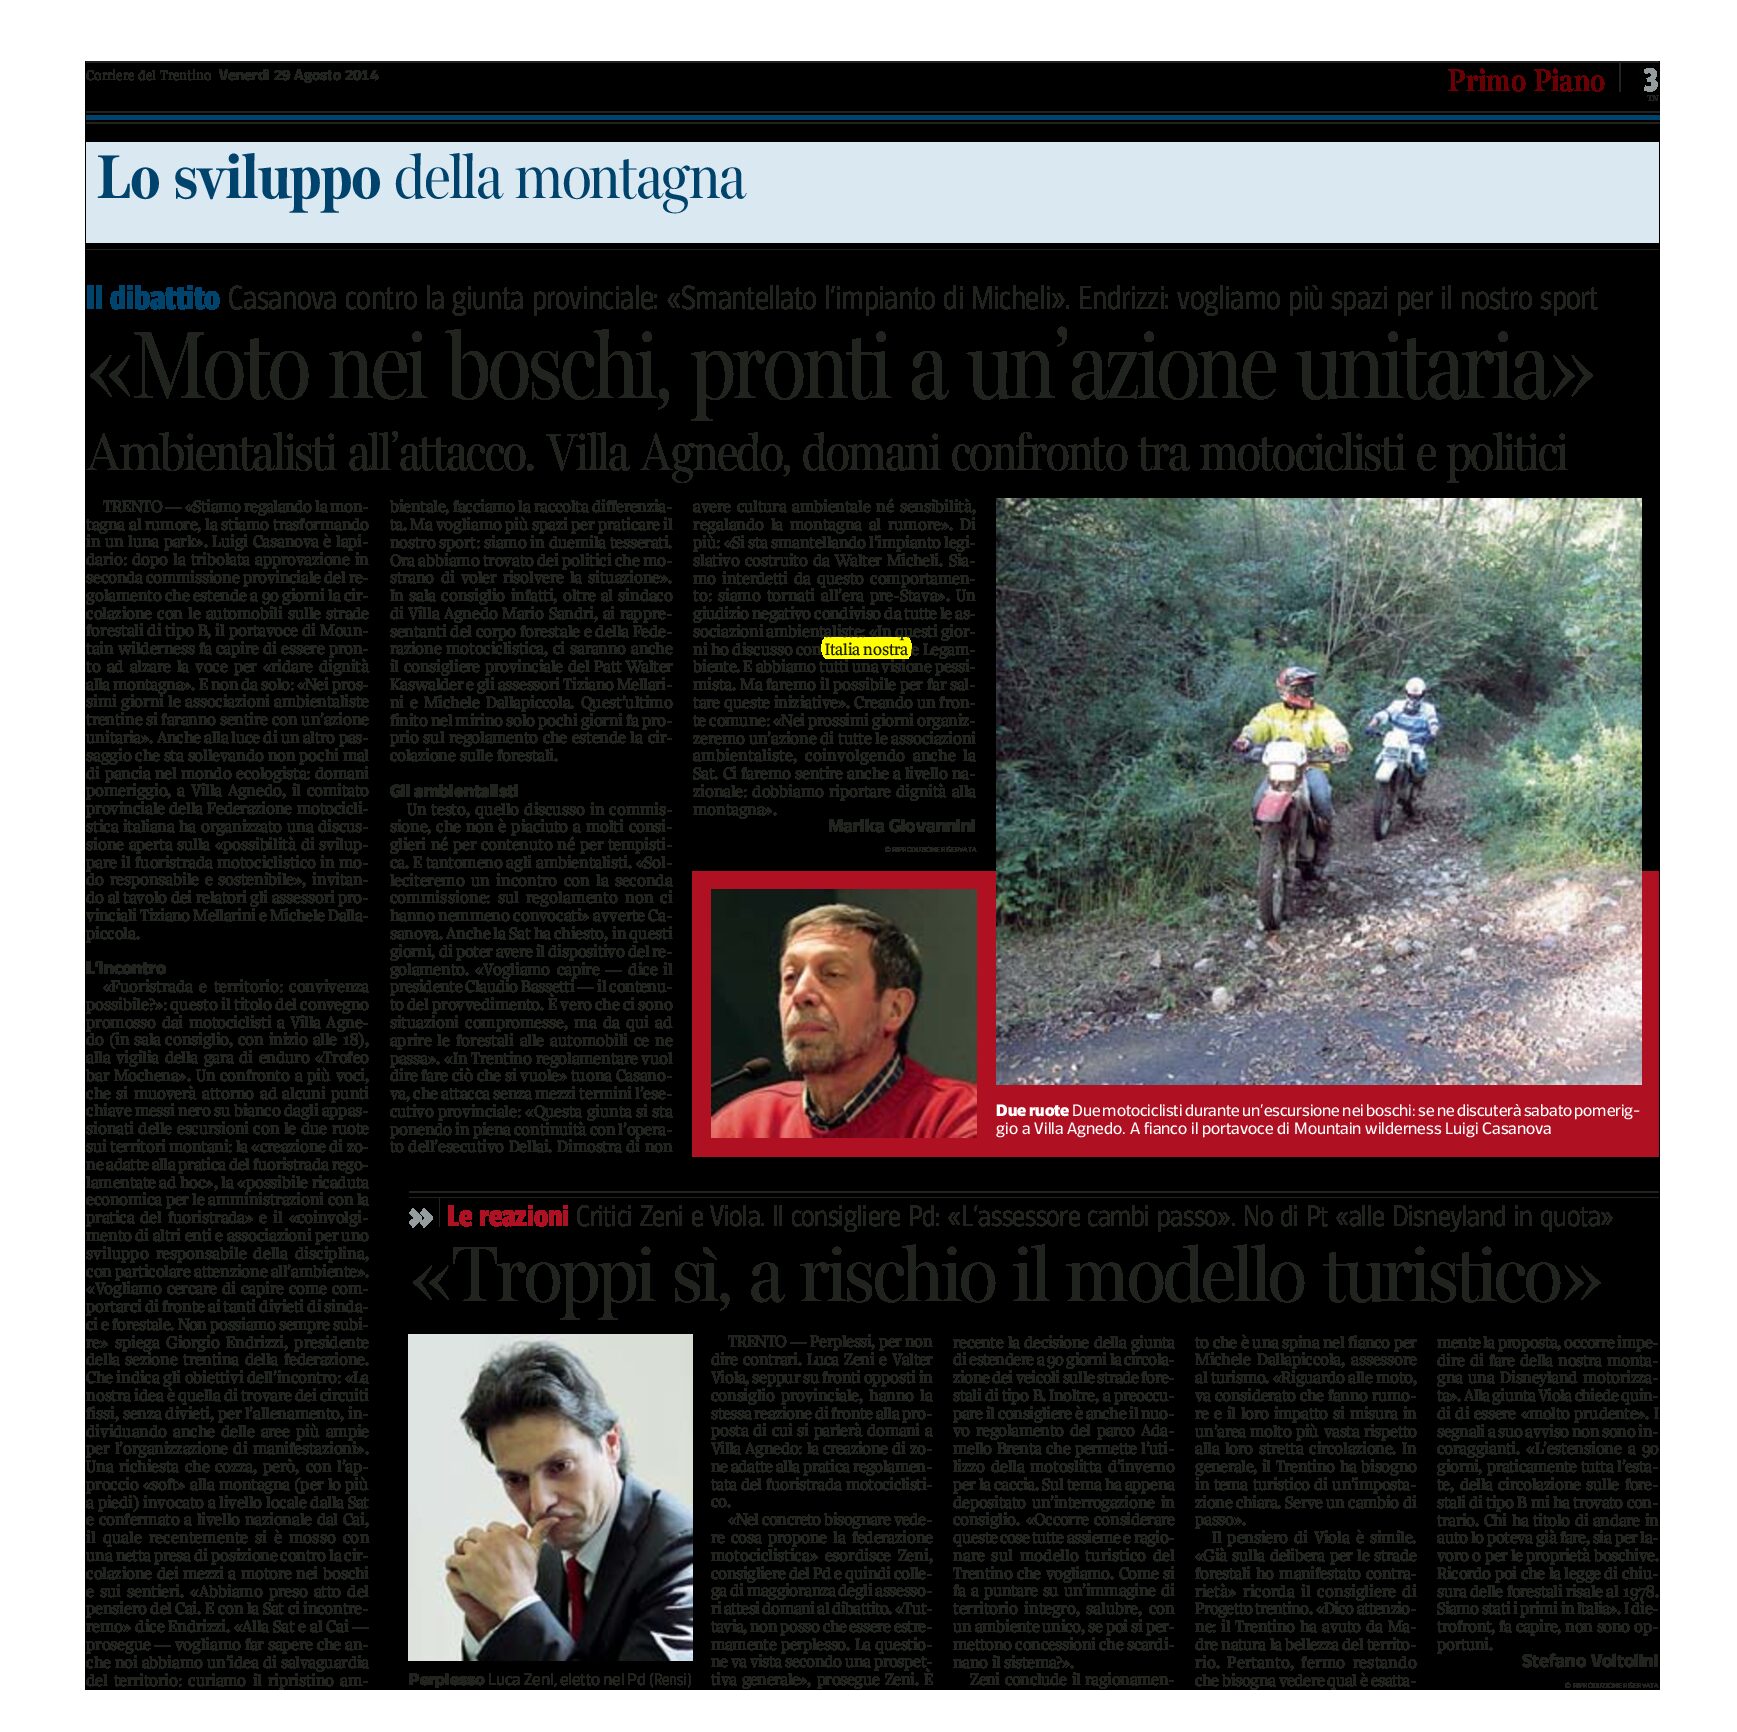 Moto nei boschi: confronto a Villa Agnedo tra motociclisti e politici. Critici gli ambientalisti